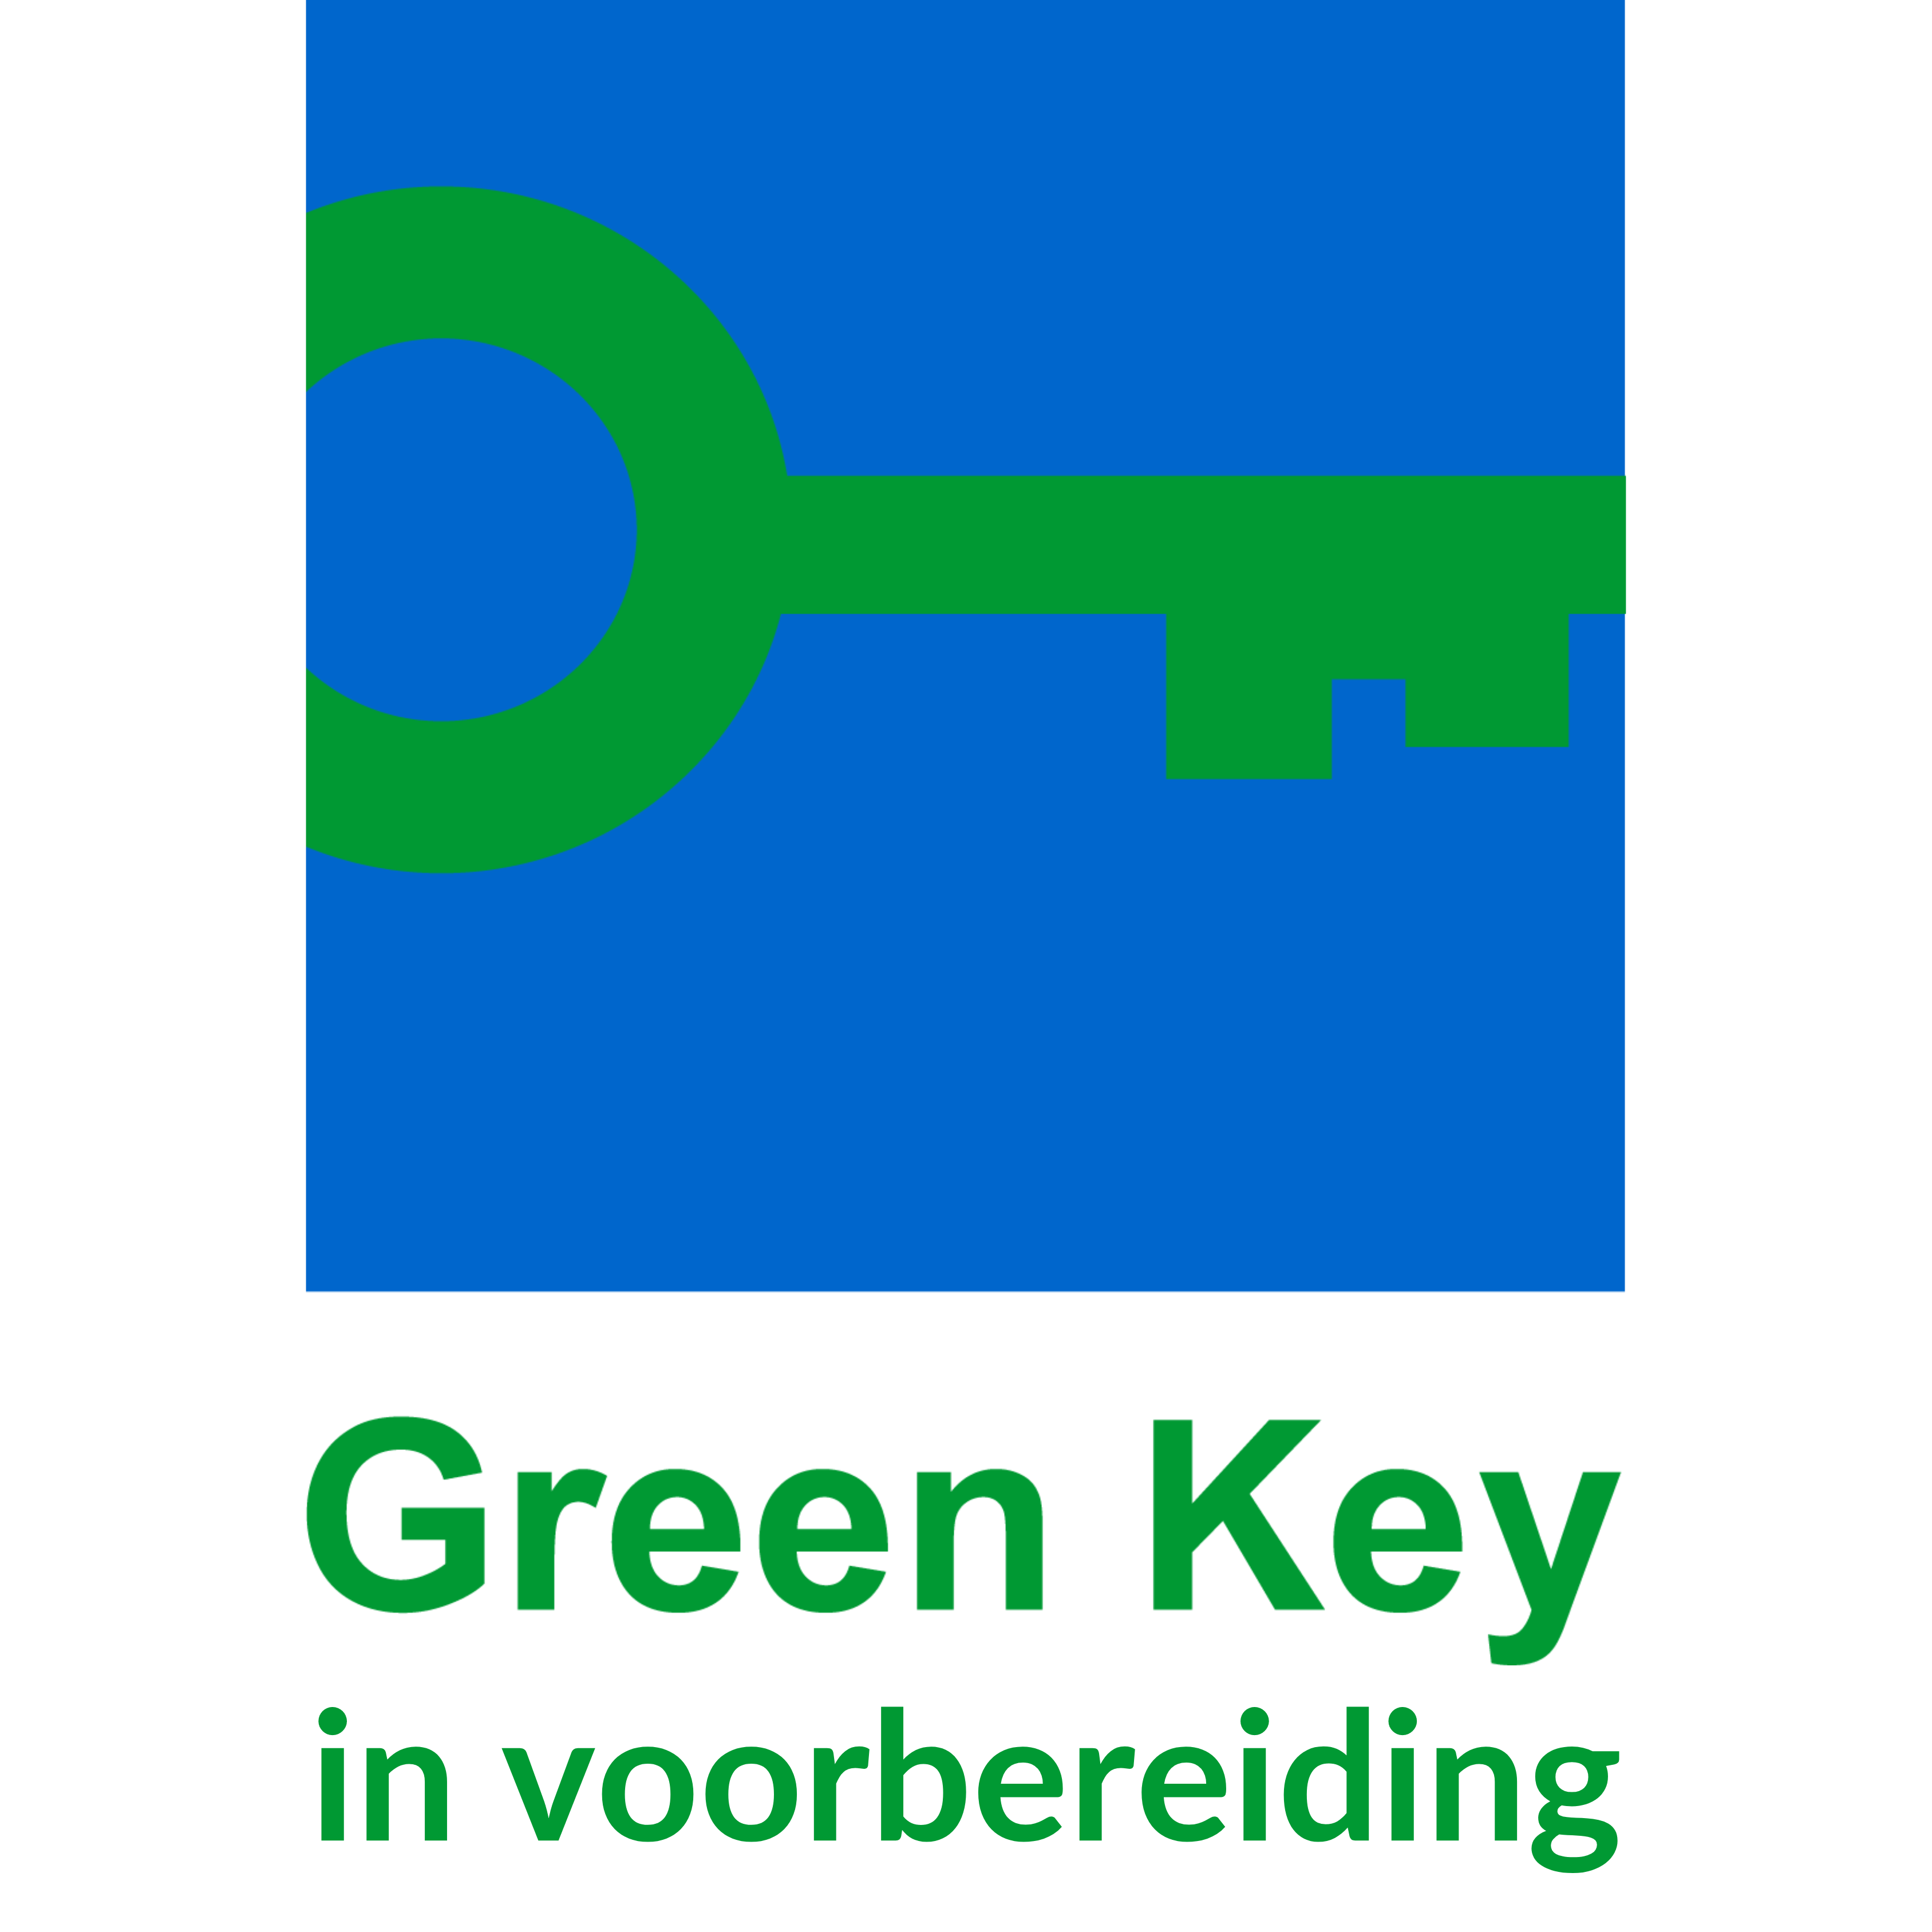 Green Key in voorbereiding